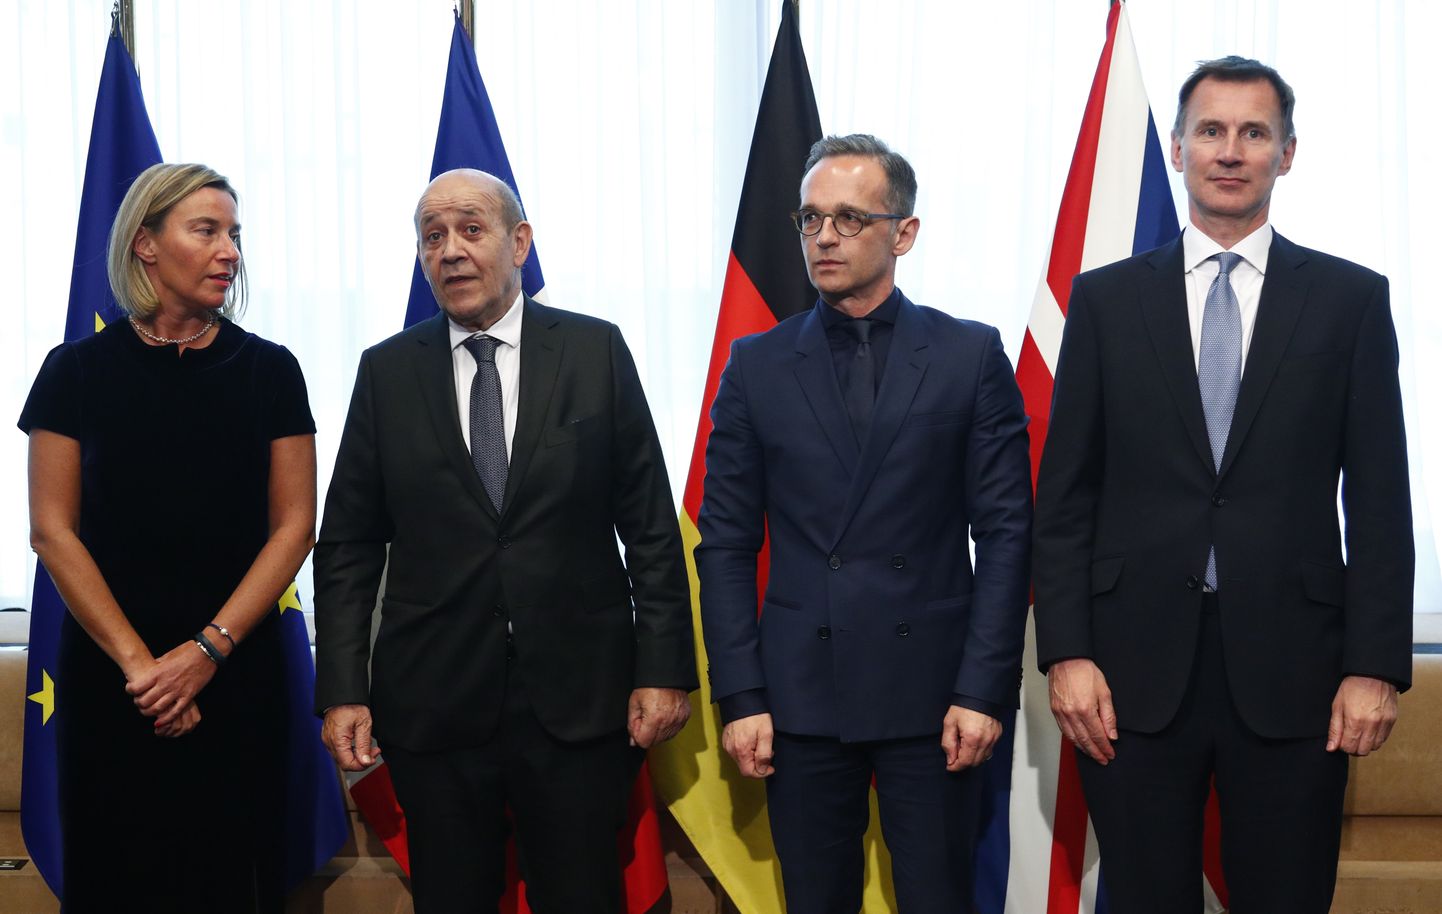 Euroopa Liidu välispoliitikajuht Federica Mogherini (vasakult esimene), Prantsuse välisminister Jean-Yves Le Drian, Saksa välisminister Heiko Maas ja Briti välisminister Jeremy Hunt esmaspäeval Brüsselis.